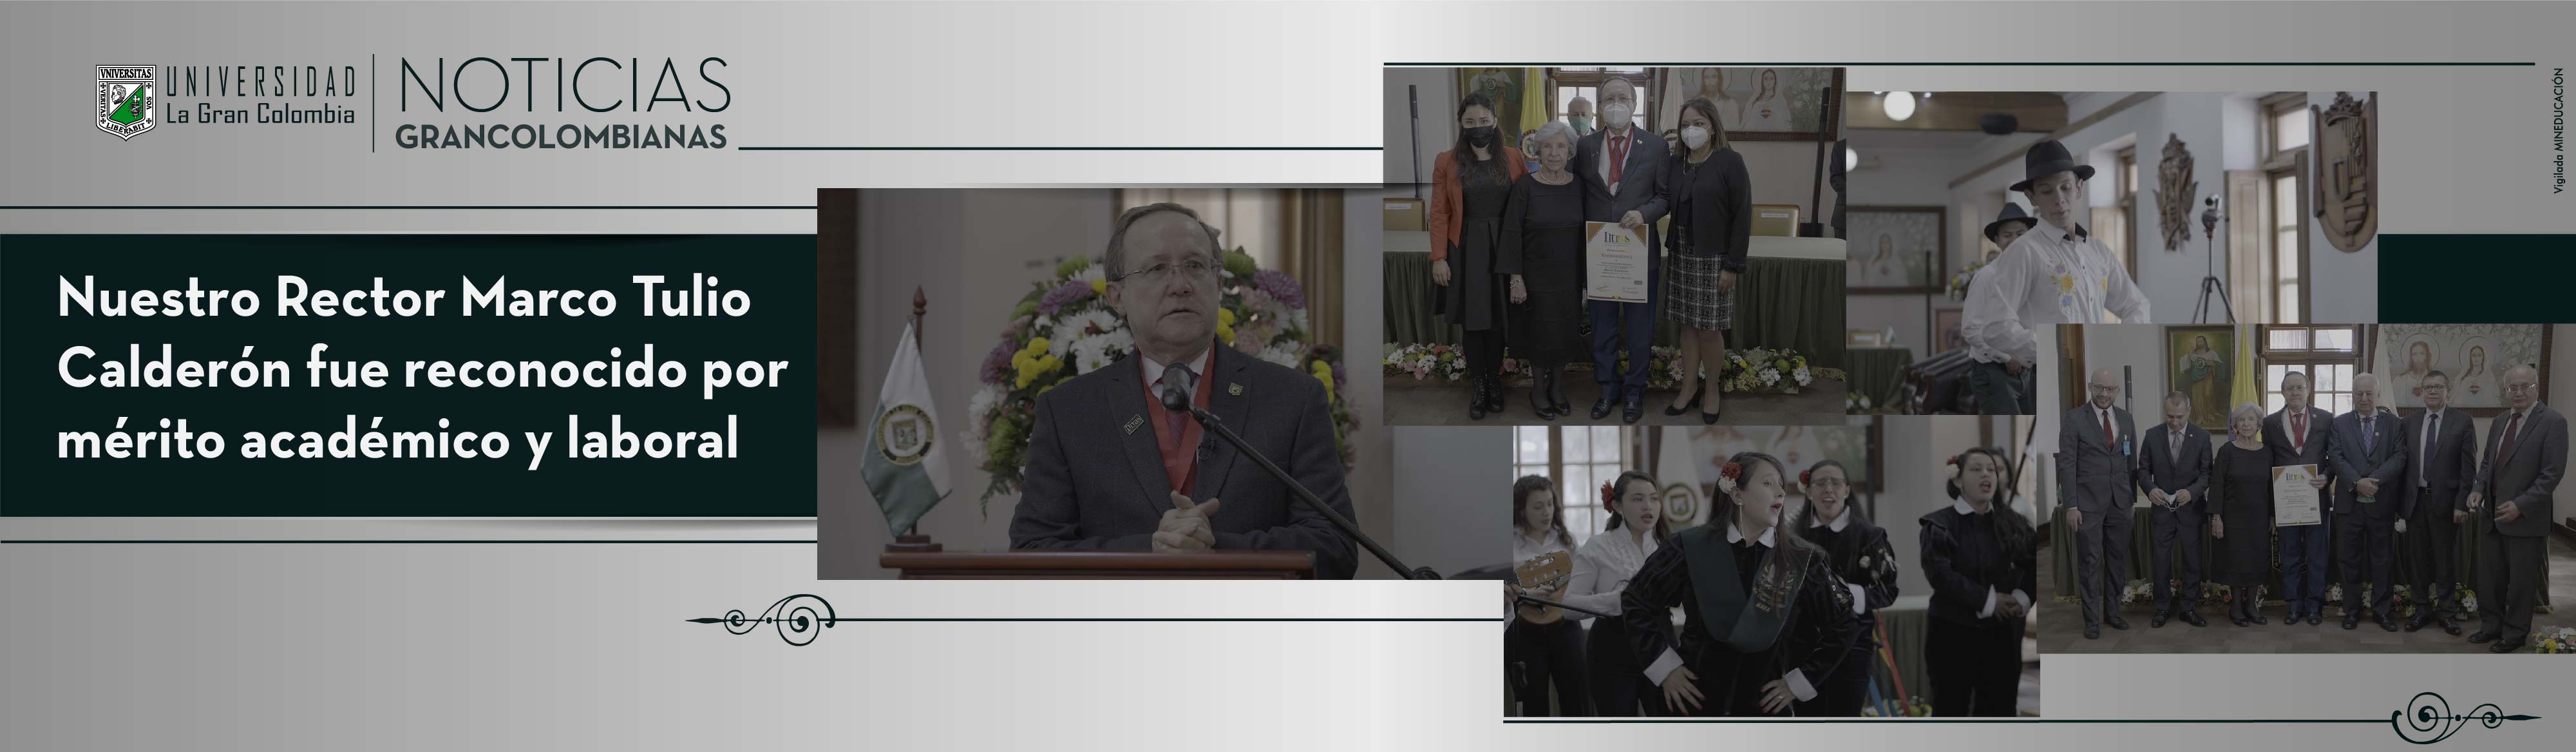 Nuestro Rector Marco Tulio Calderón fue reconocido por mérito académico y laboral